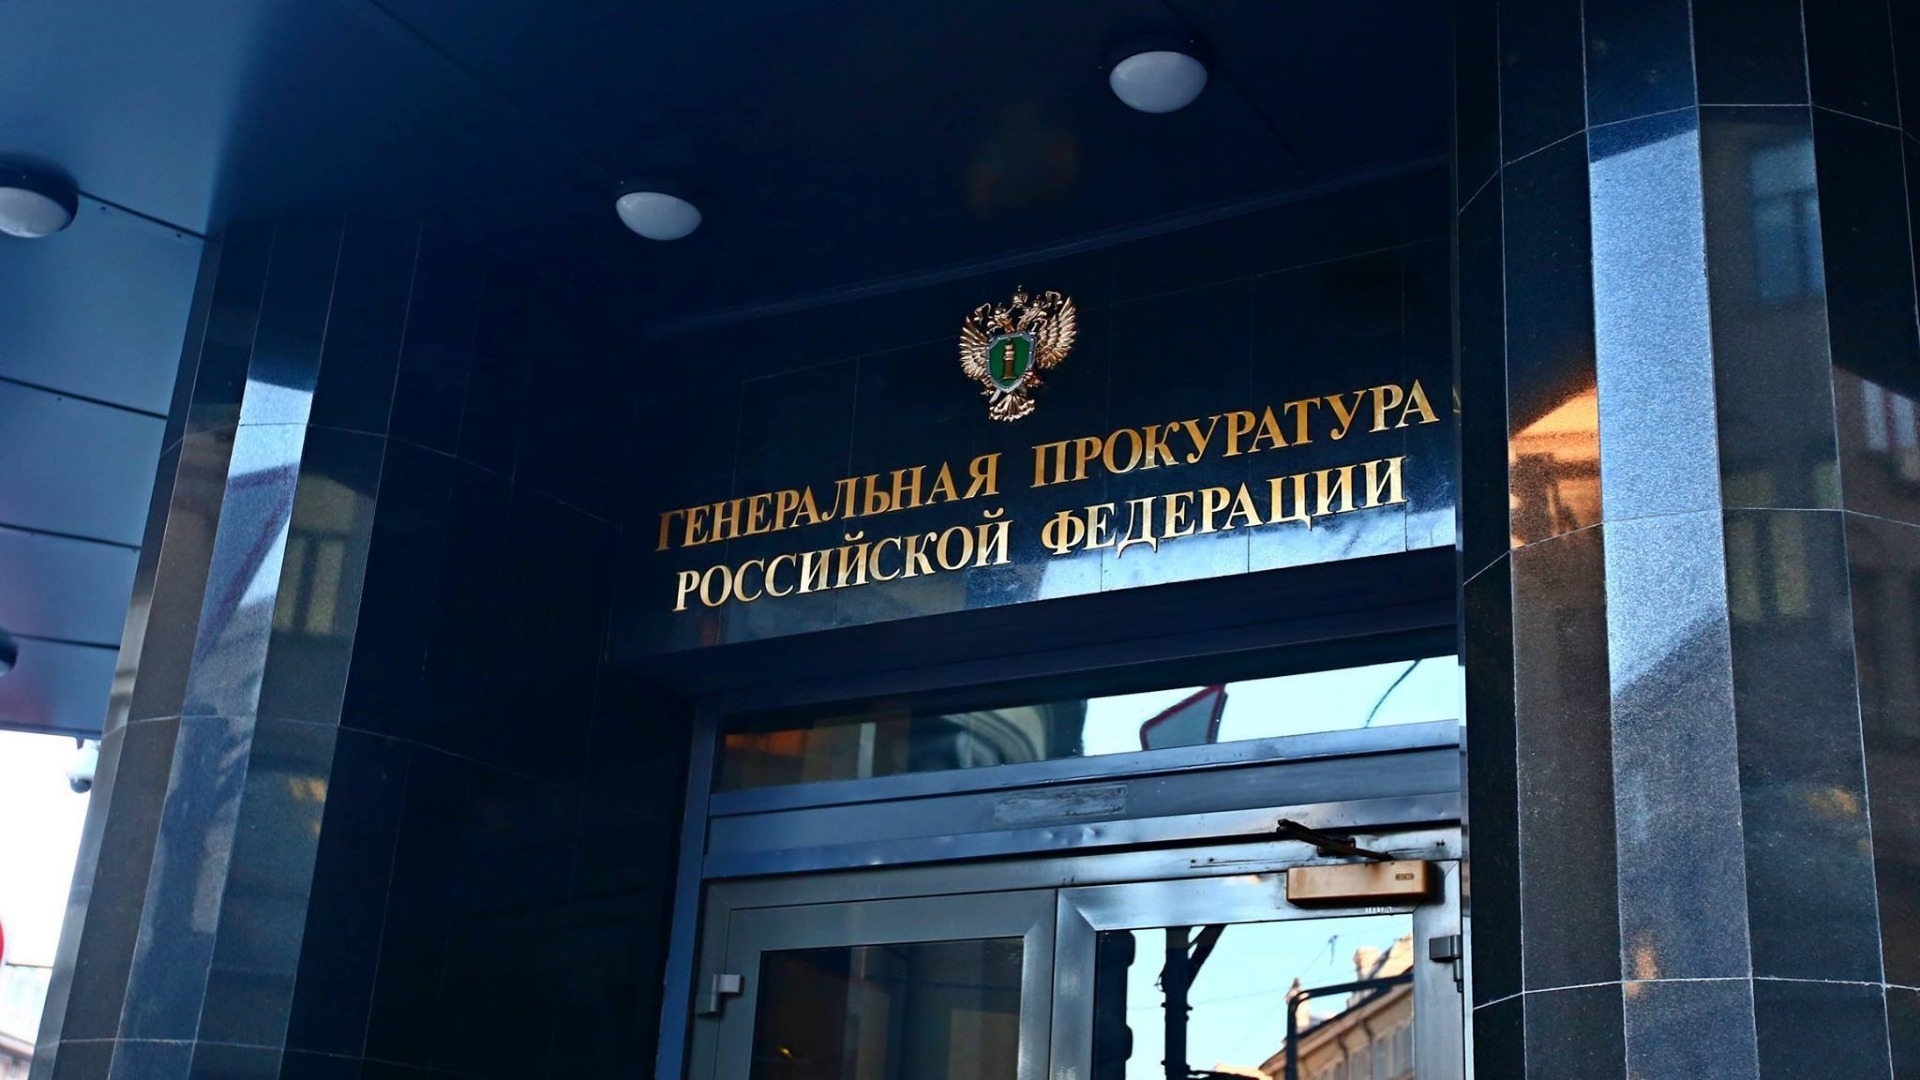 Генпрокуратура России признала нежелательным движение «АЛЛАТРА»